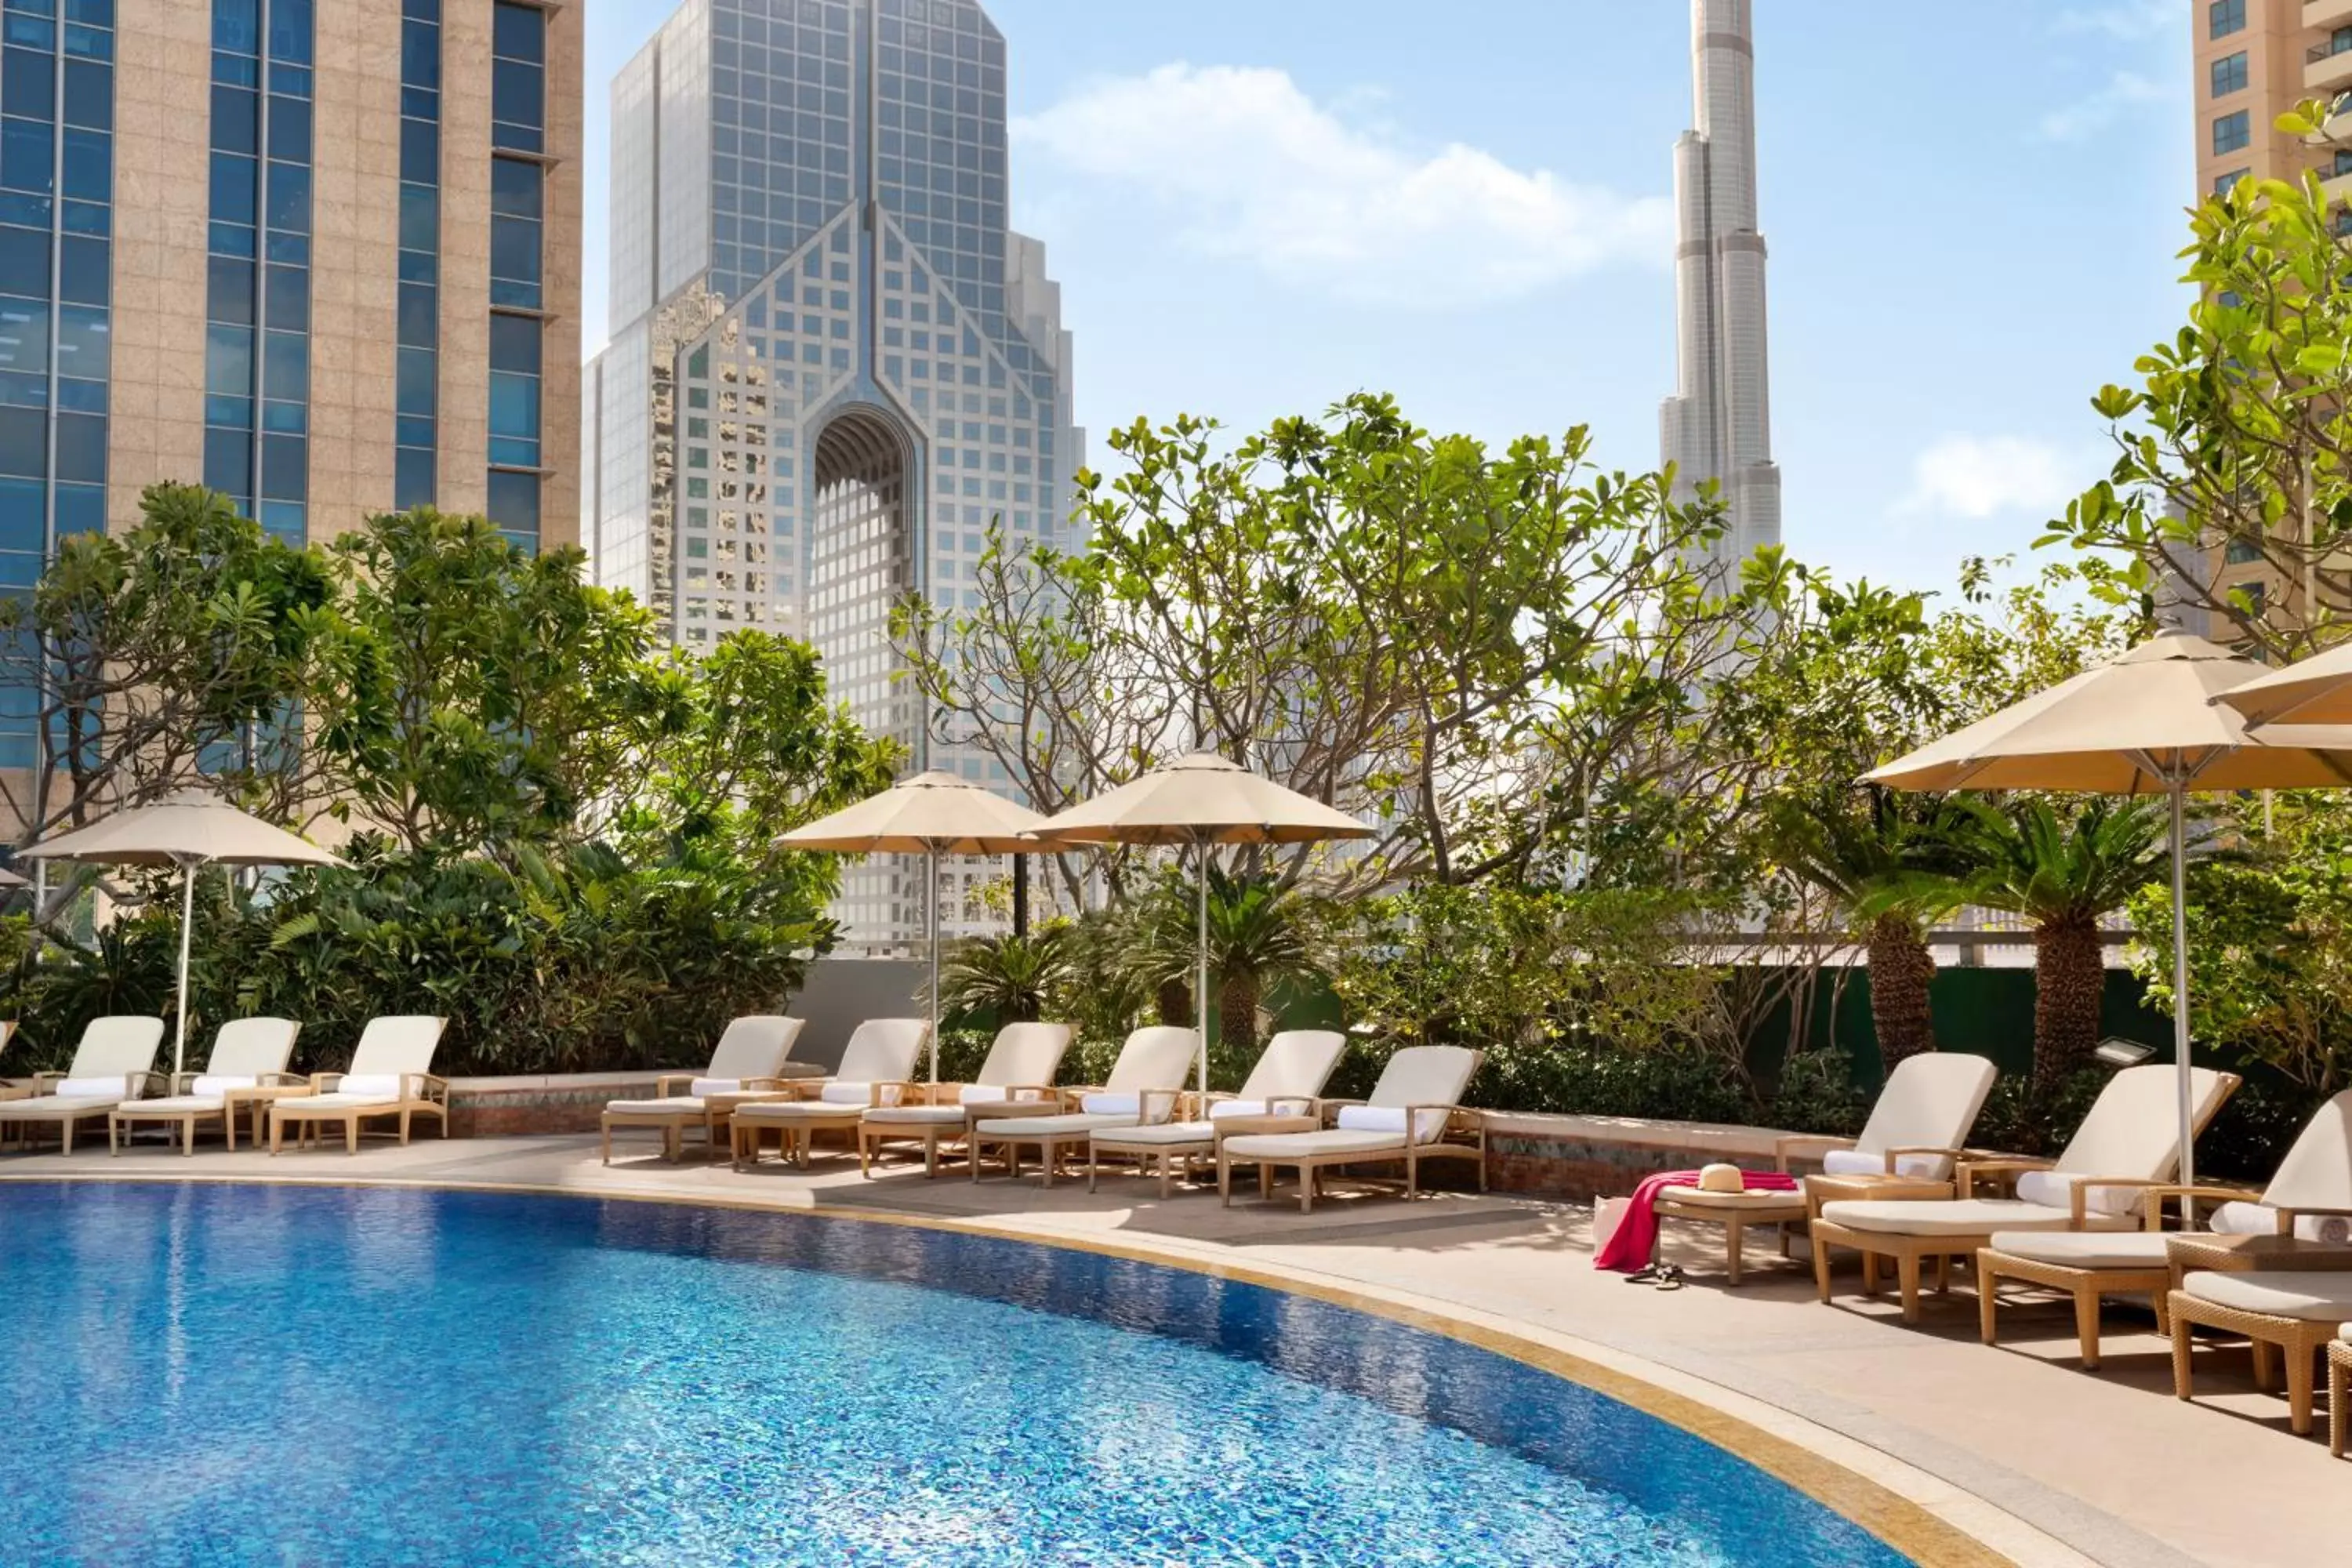 Swimming Pool in Shangri-La Dubai